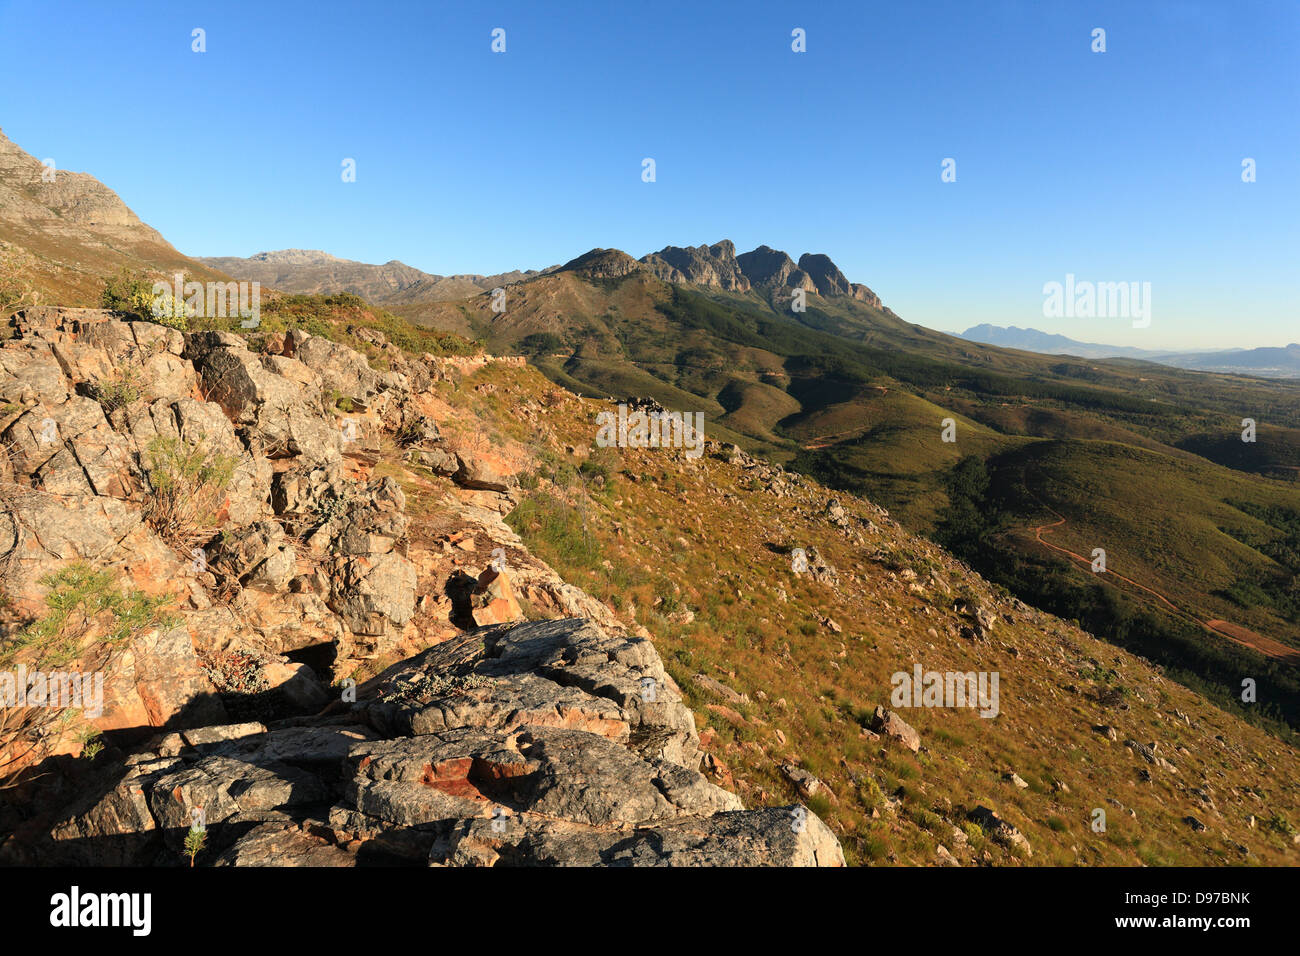 Vue aérienne des terres agricoles de Wellington, Western Cape, Afrique du Sud, prises à partir de Bains Kloof pass dans les montagnes environnantes Banque D'Images